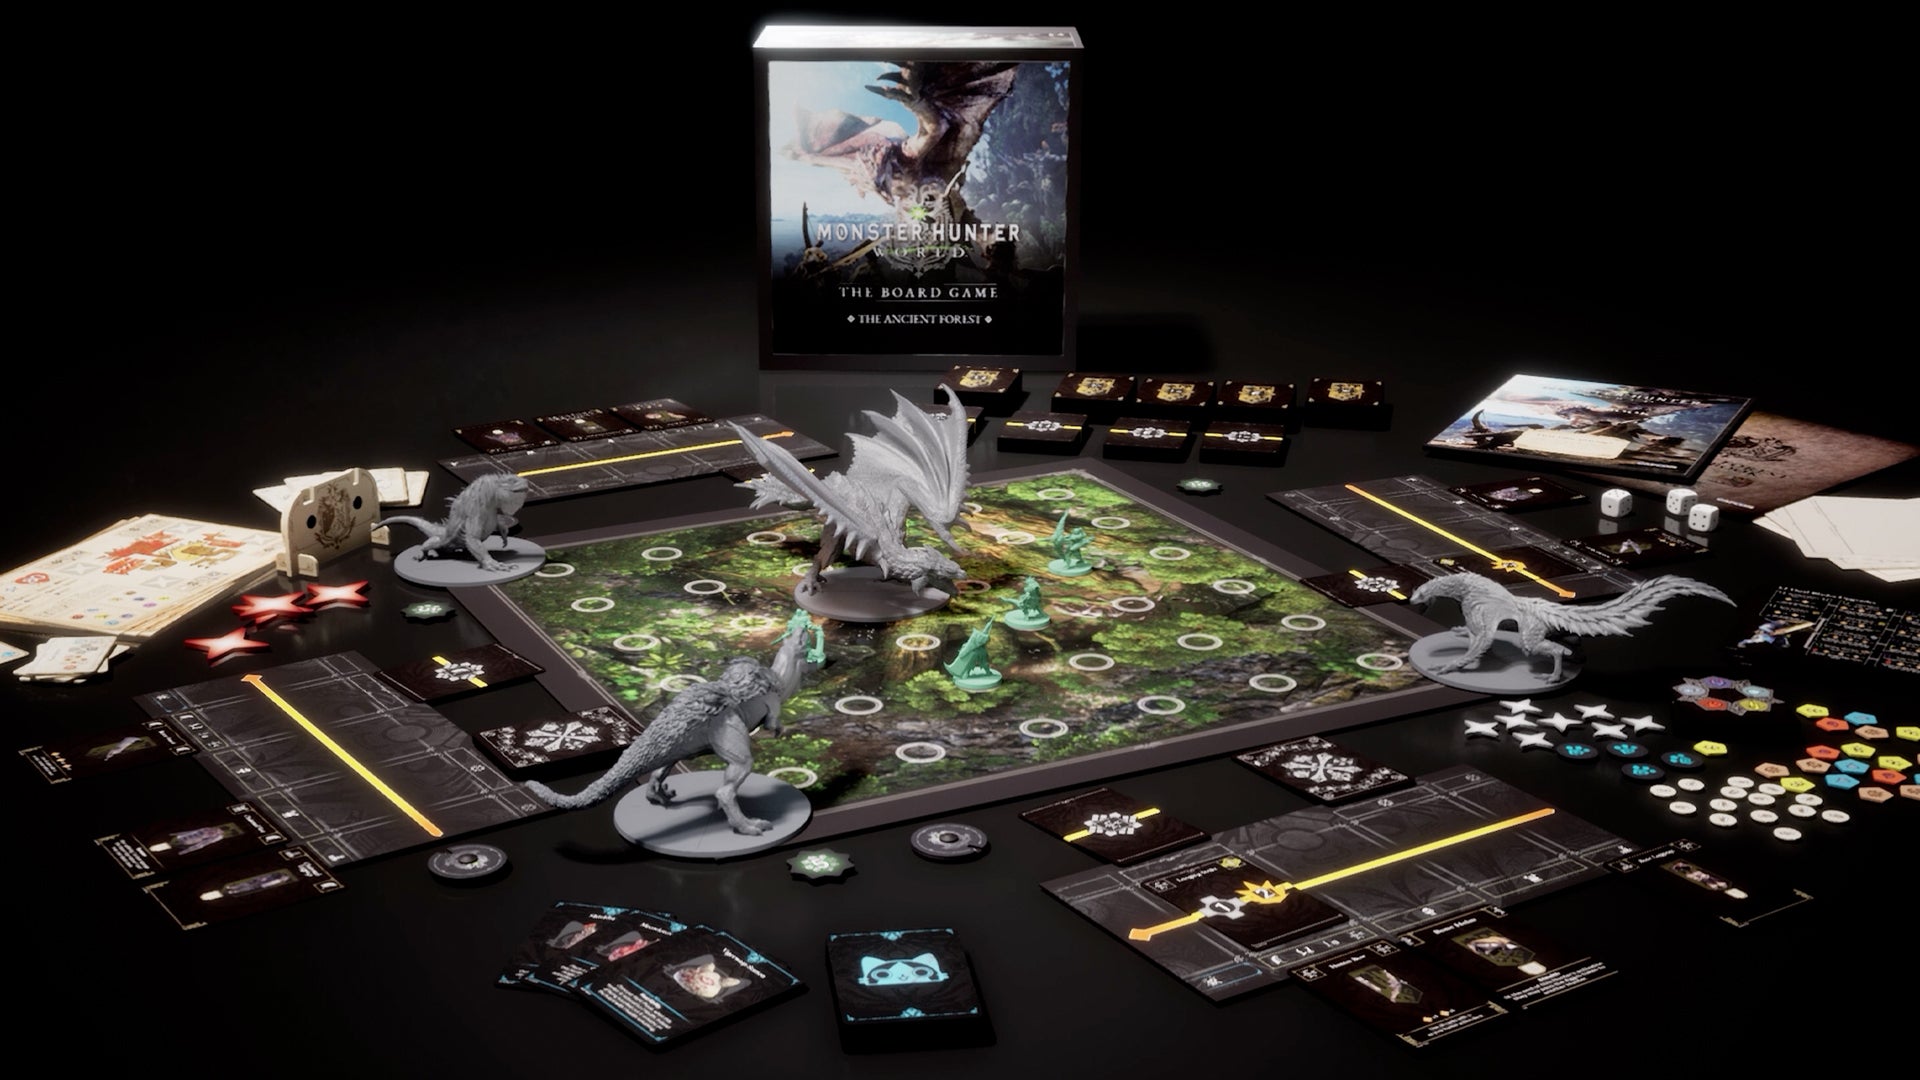 Monster Hunter World: The Board Game gets a Kickstarter launch